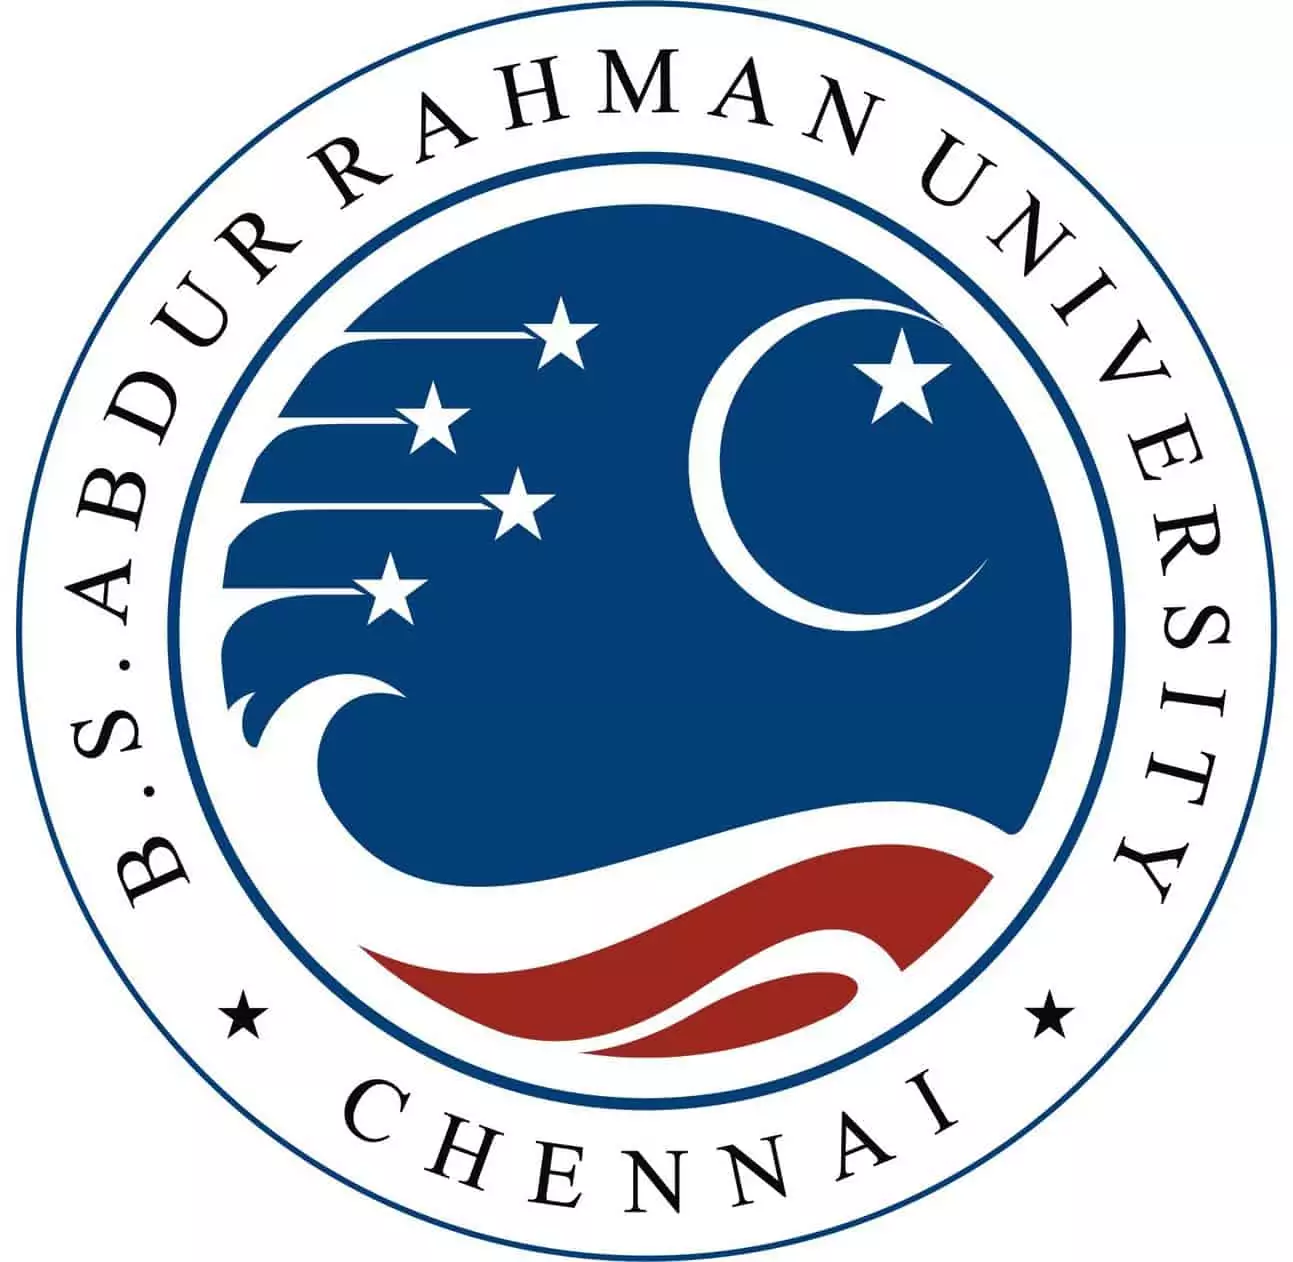 B.S. Abdur Rahman University (BSAU), Chennai